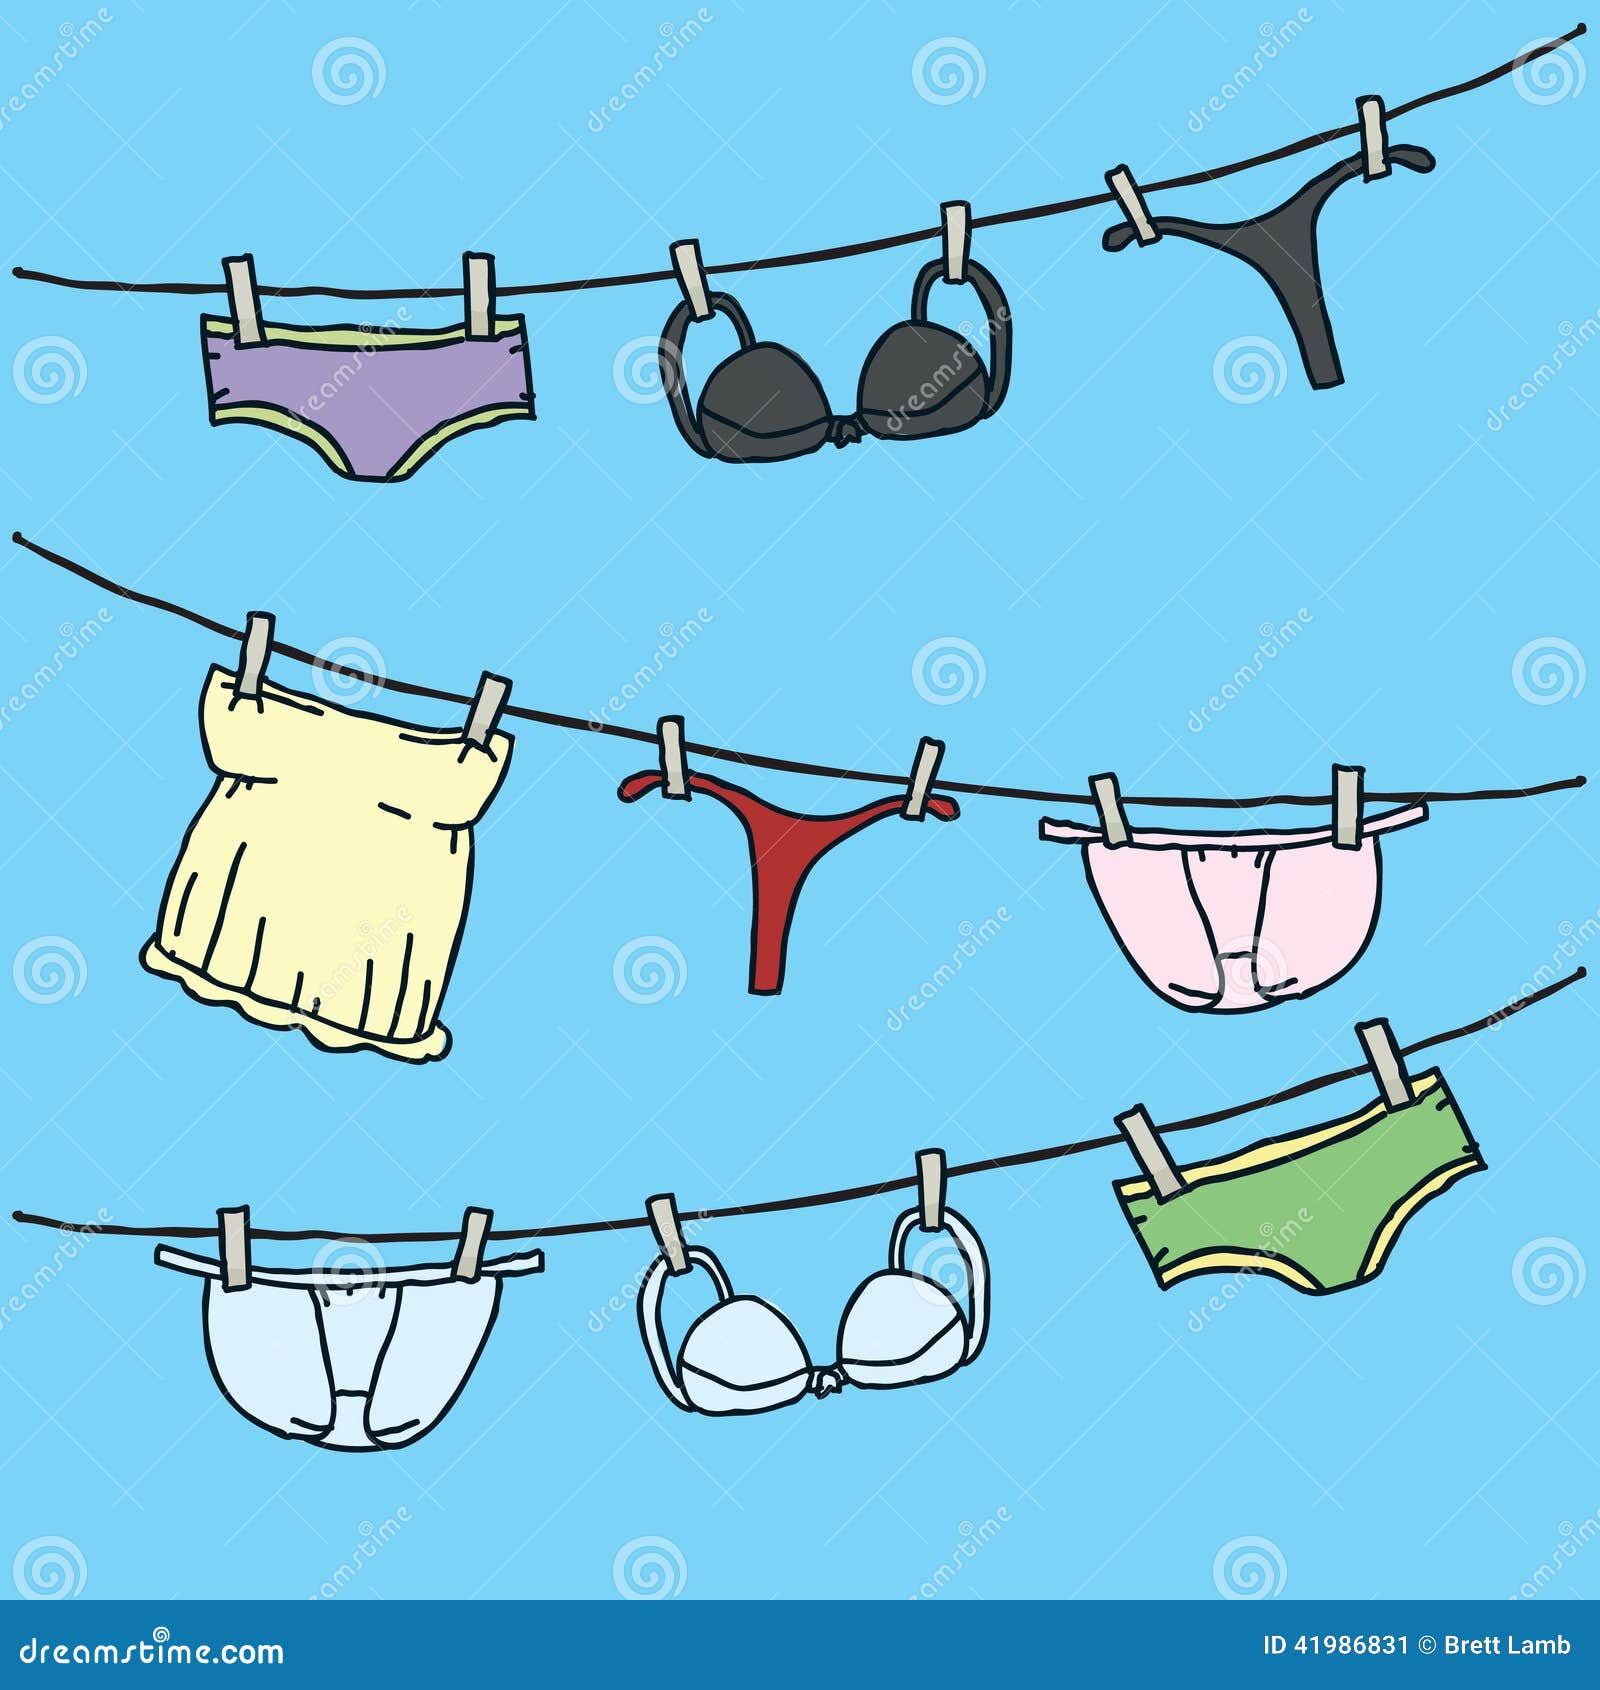 underwear cartoon clip art - photo #33